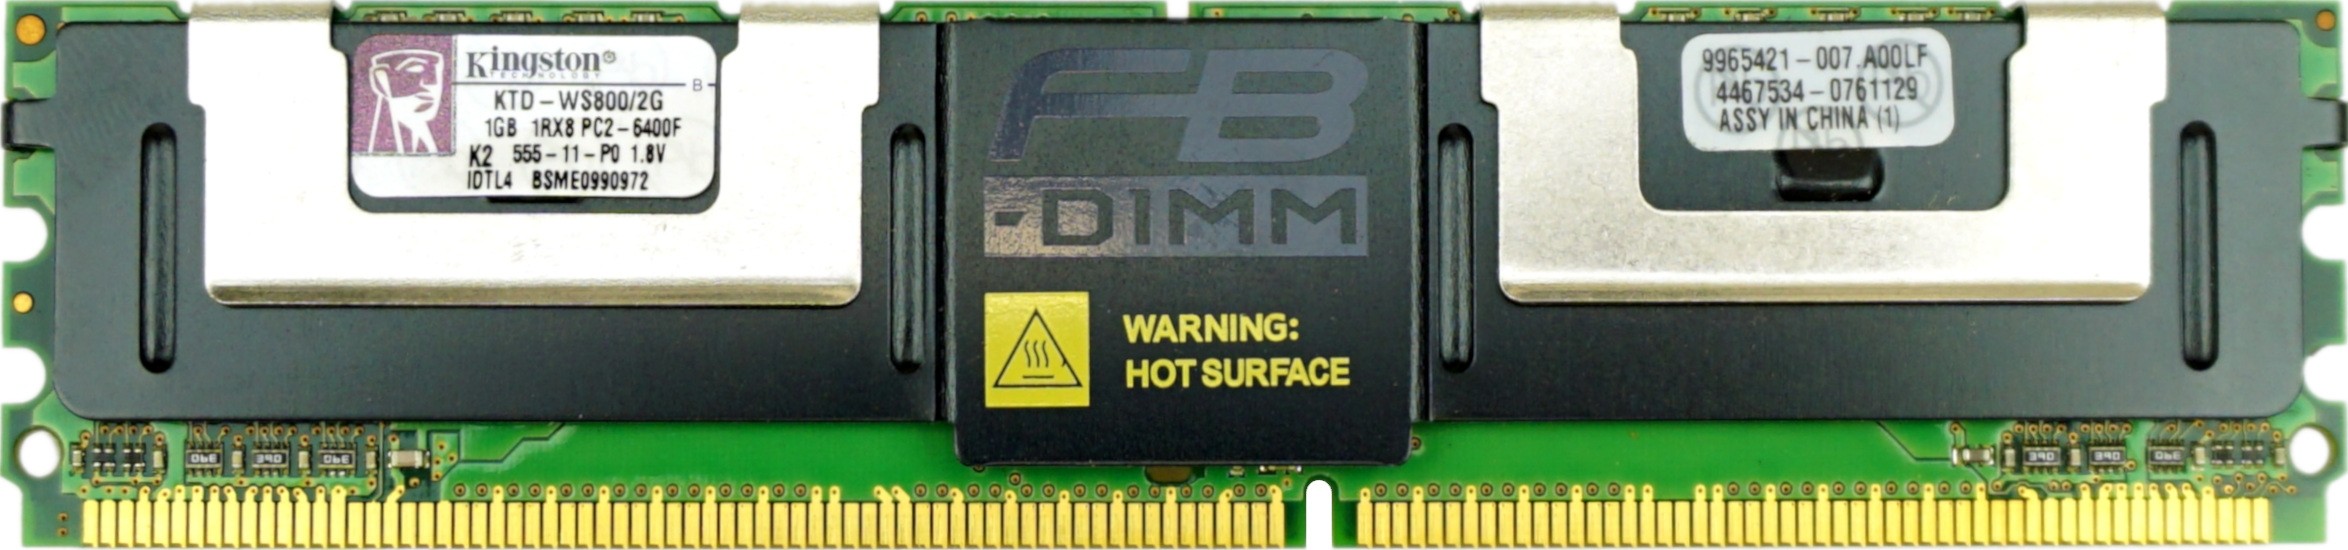 Kingston - 1GB PC2-6400F (DDR2-800Mhz, 1RX8)